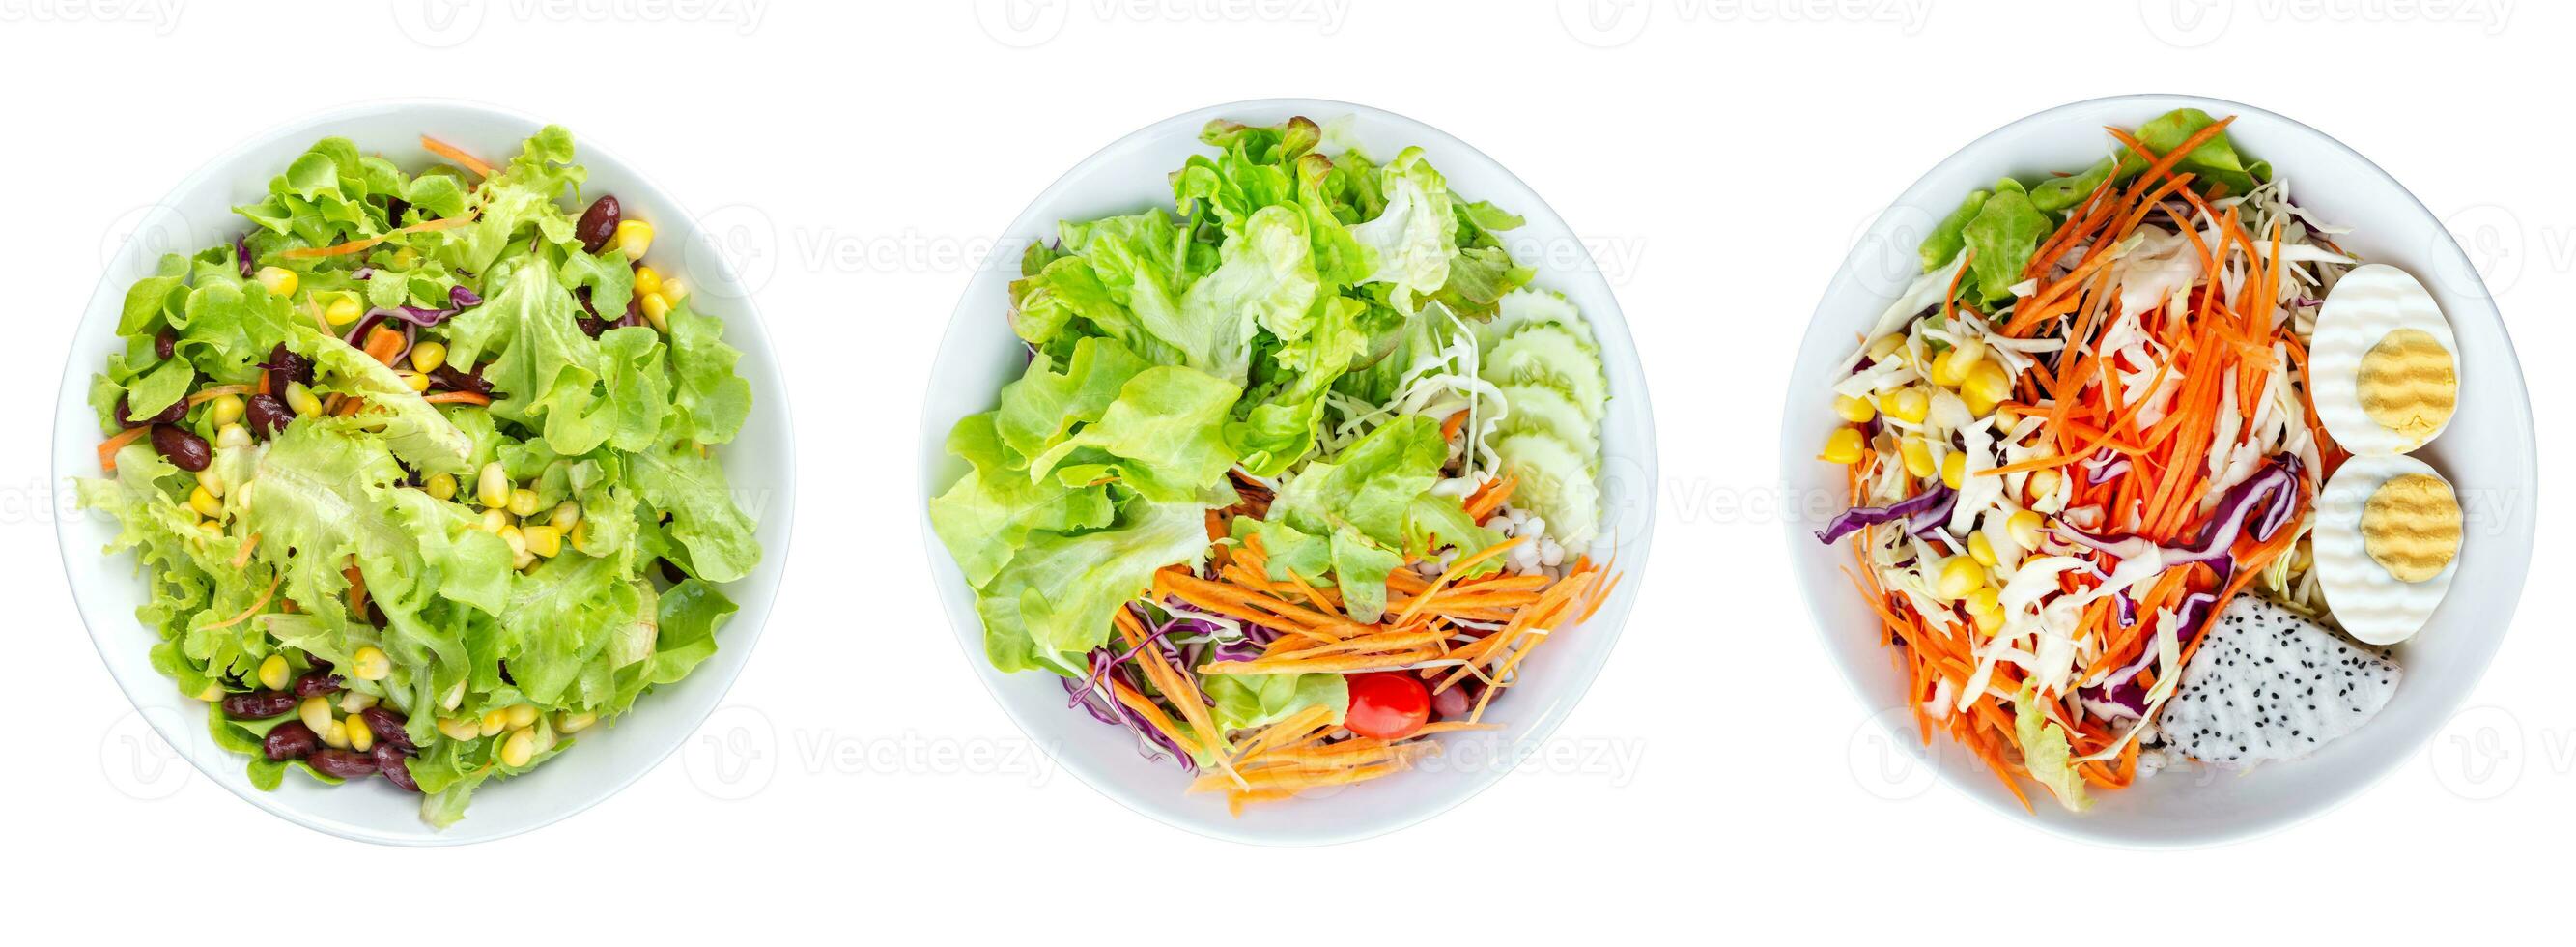 samling uppsättning topp se färgrik vegetabiliska sallad i maträtt isolerat på vit bakgrund med klippning väg foto